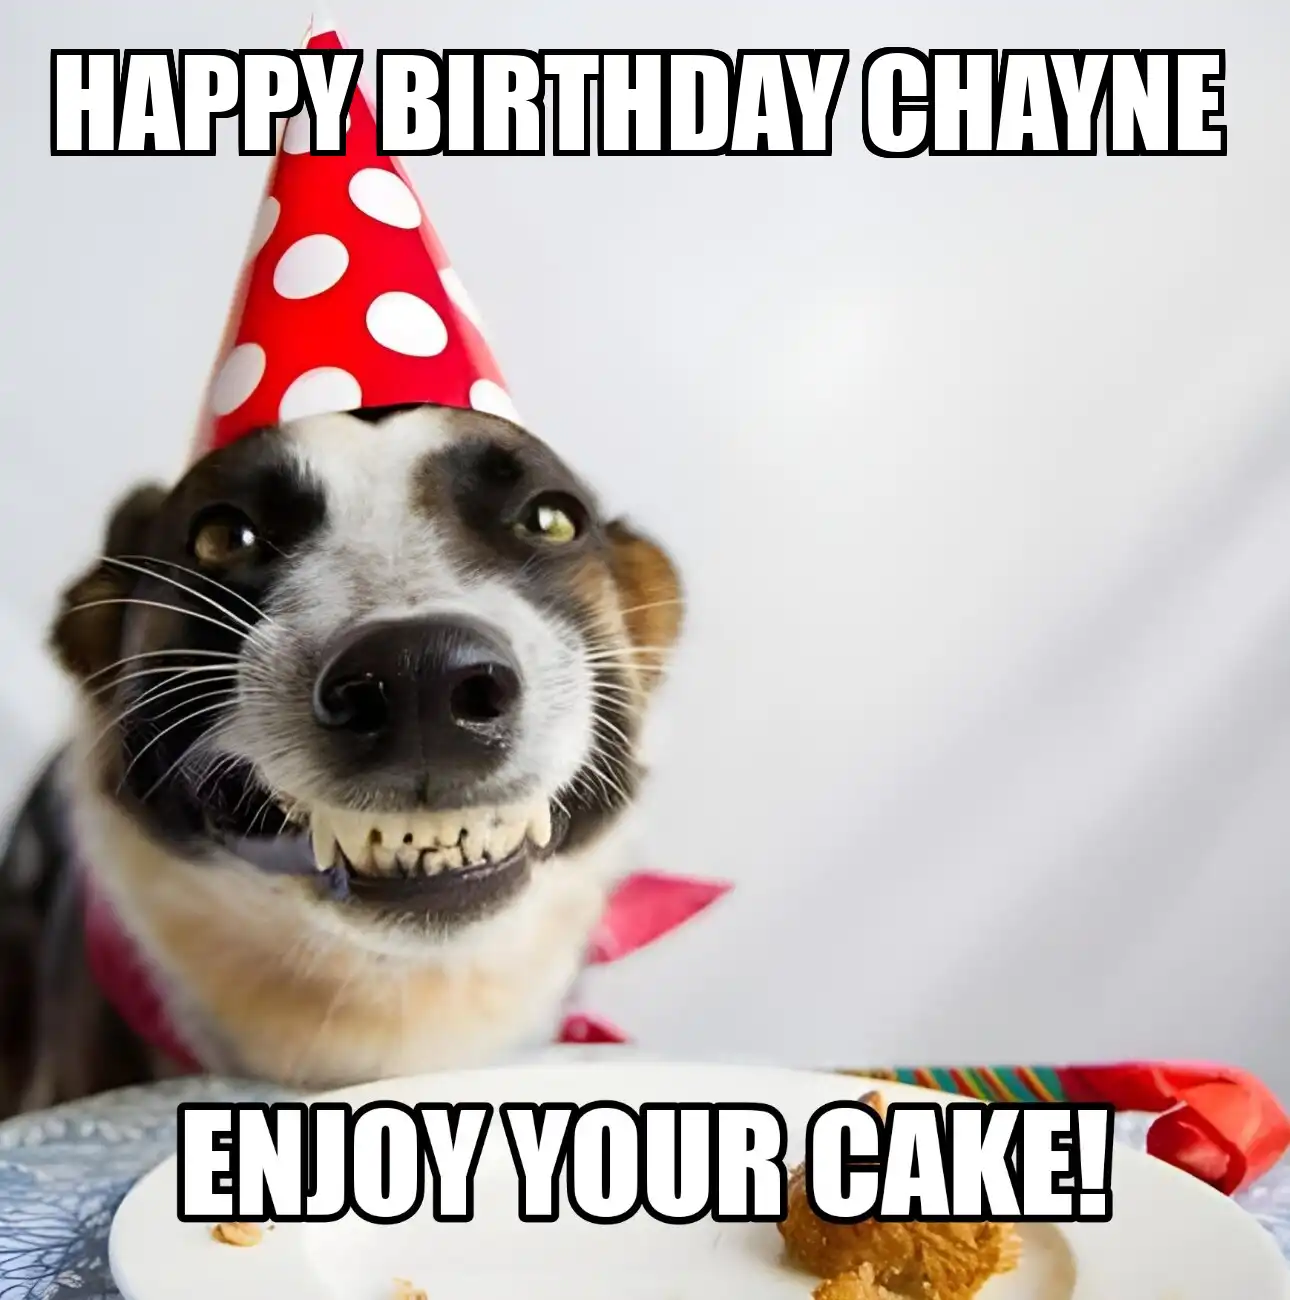 Happy Birthday Chayne Enjoy Your Cake Dog Meme